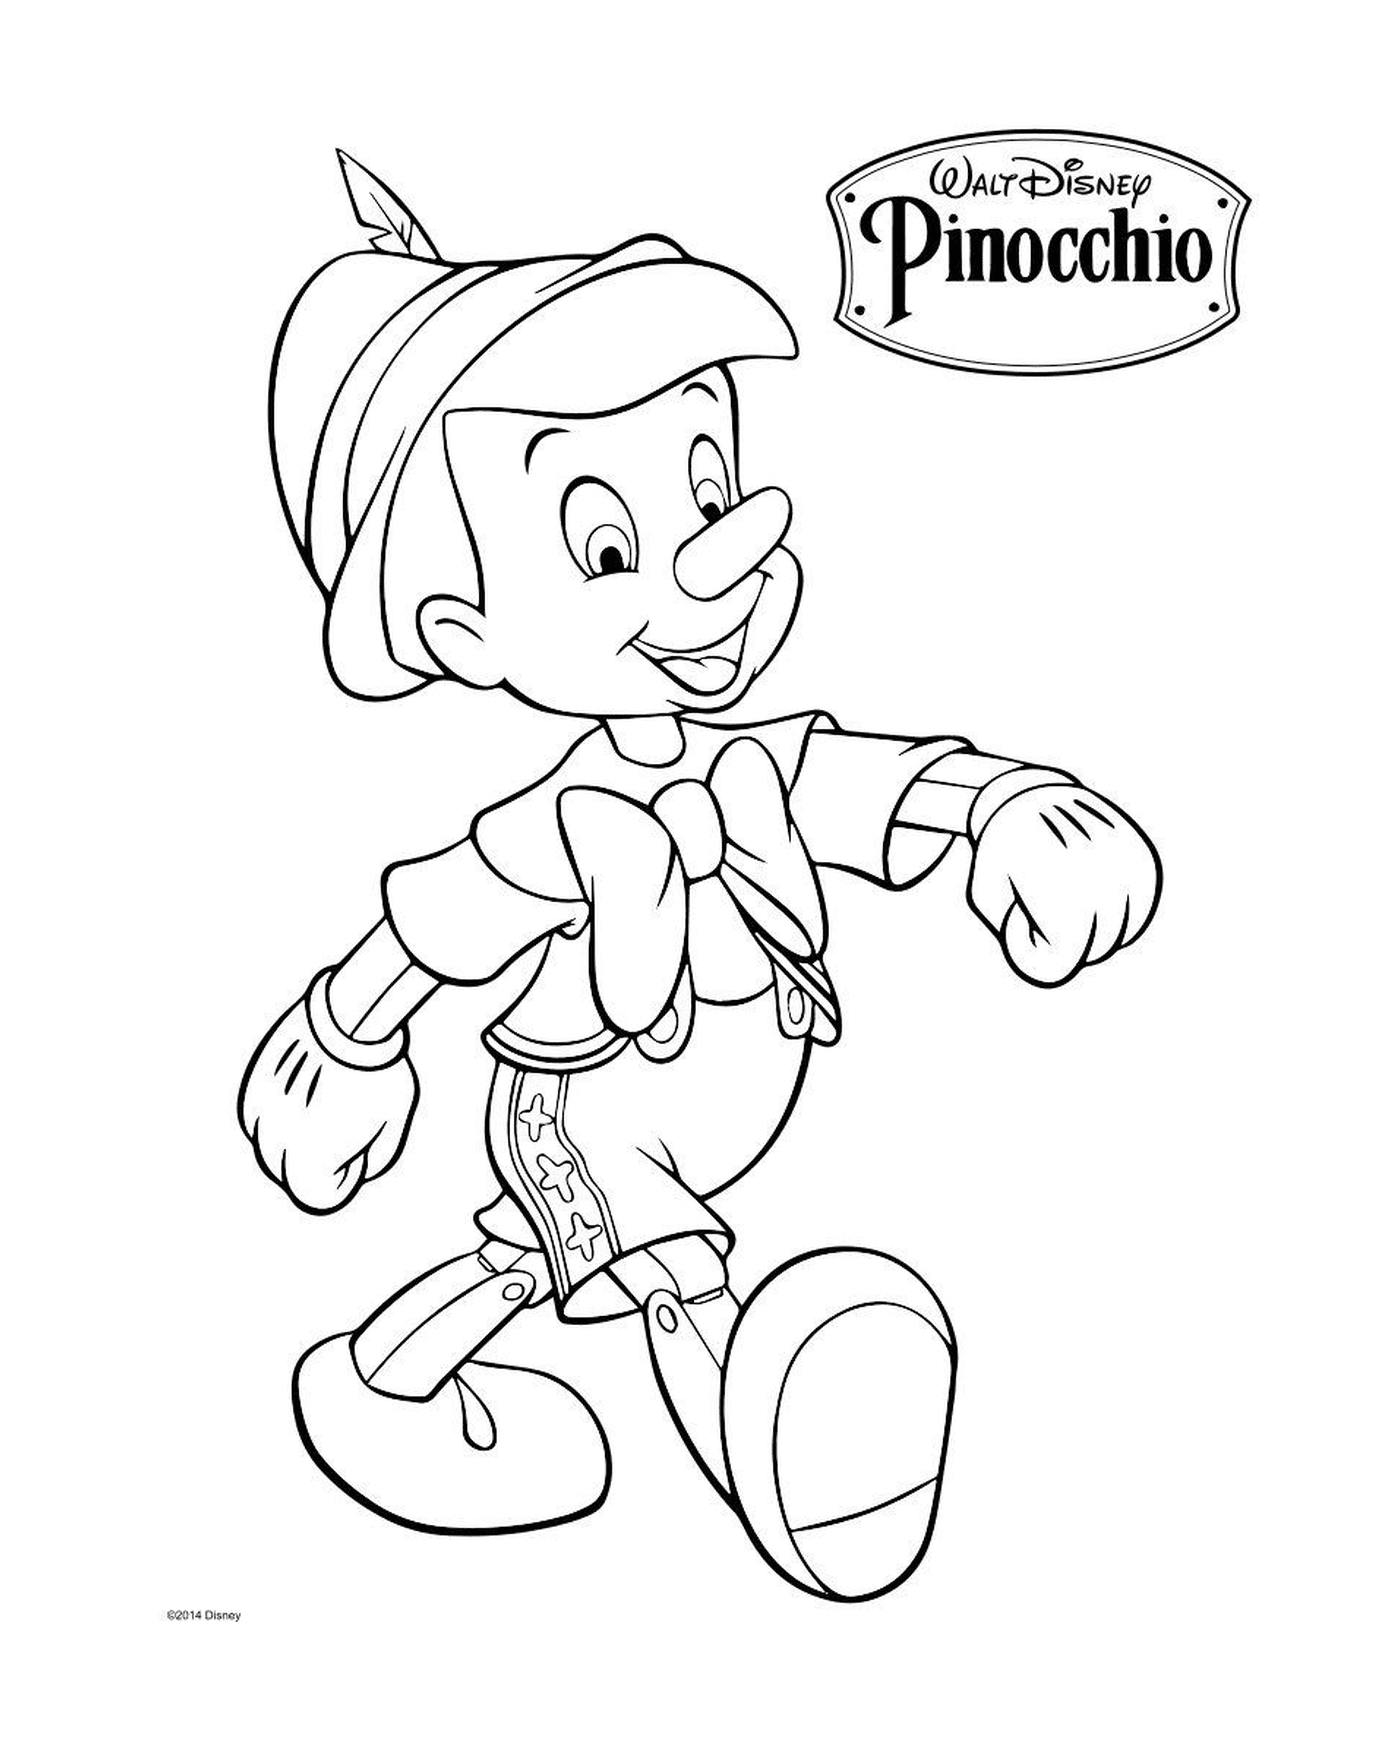   Geppetto, un menuisier italien, fabrique une marionnette Pinocchio 